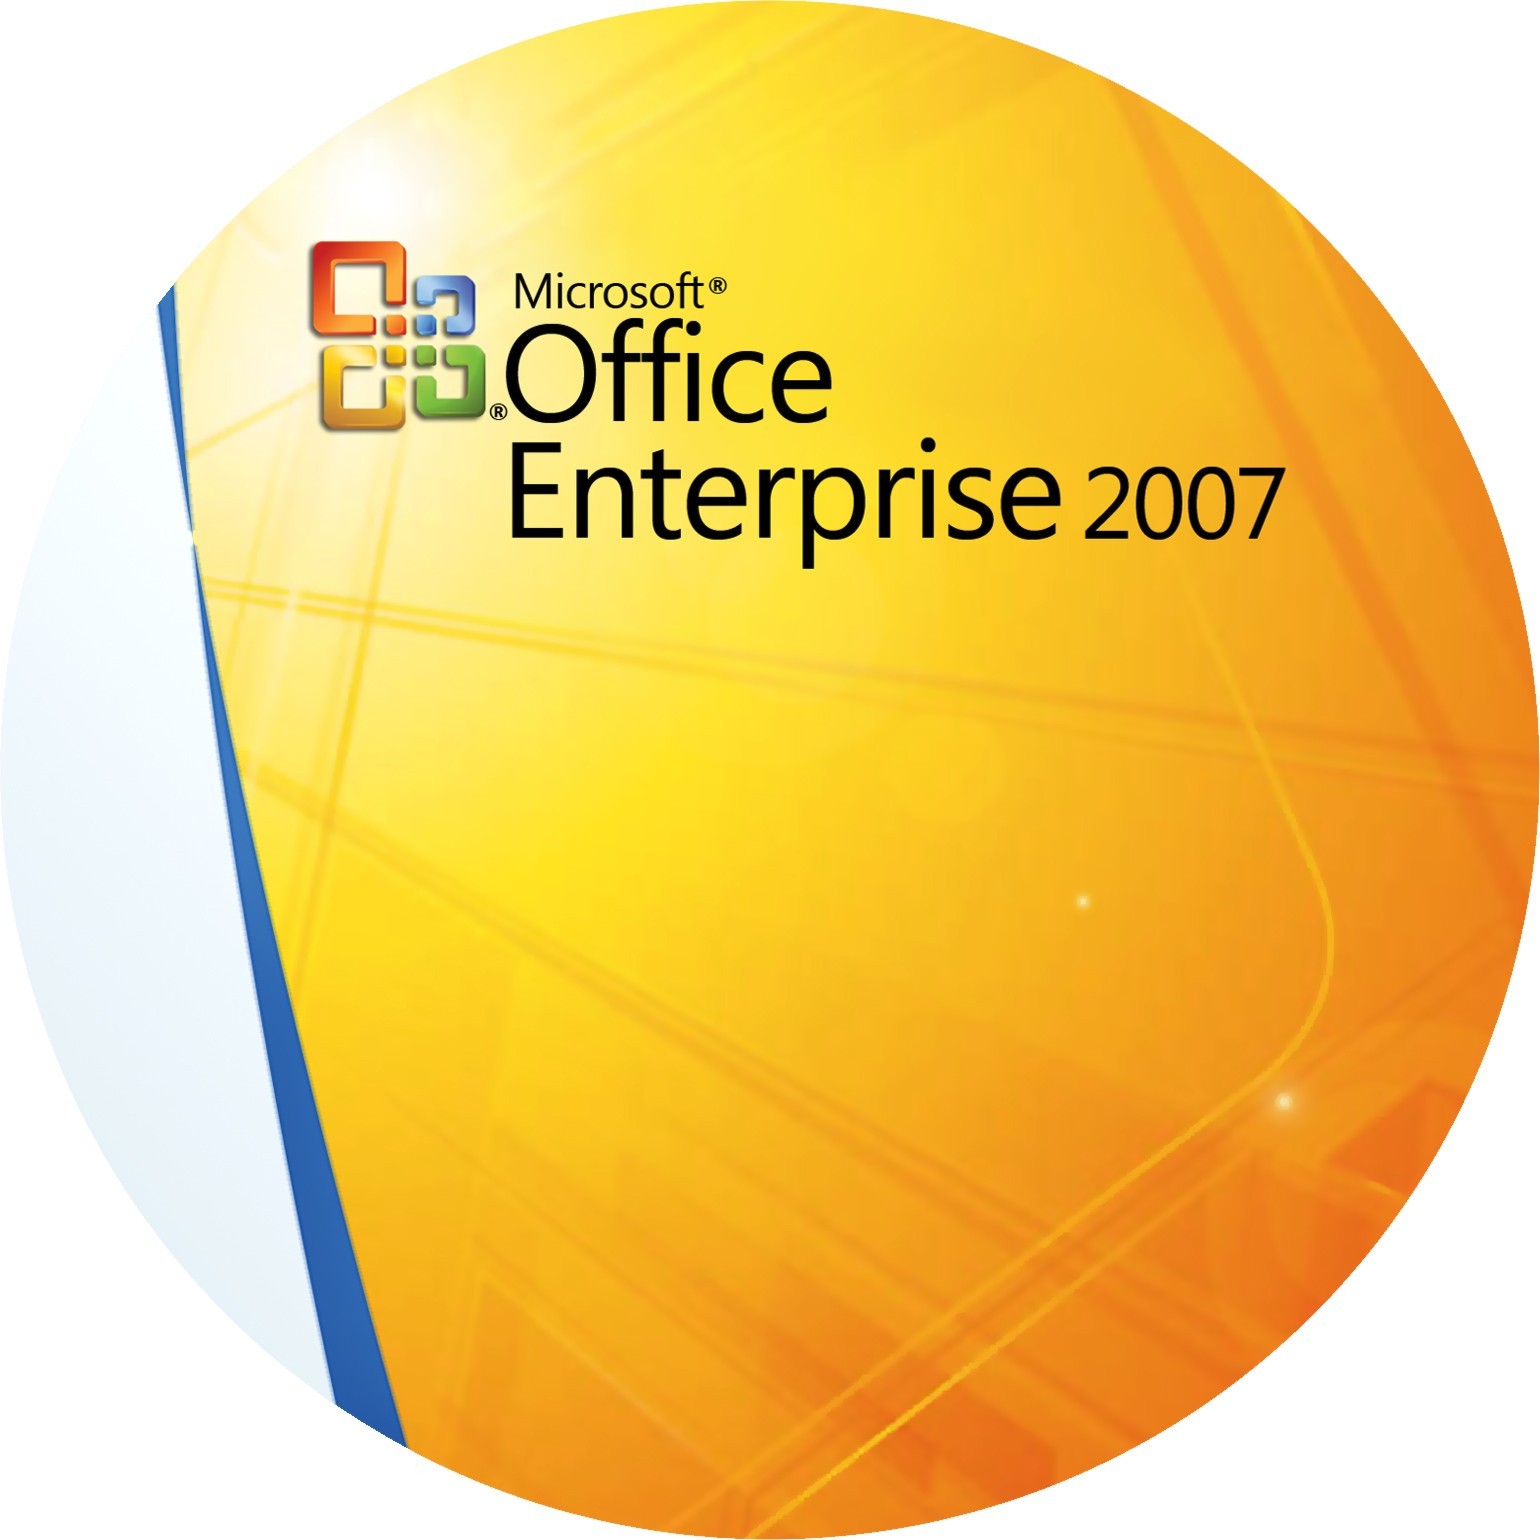 Microsoft Office 2007 как работать